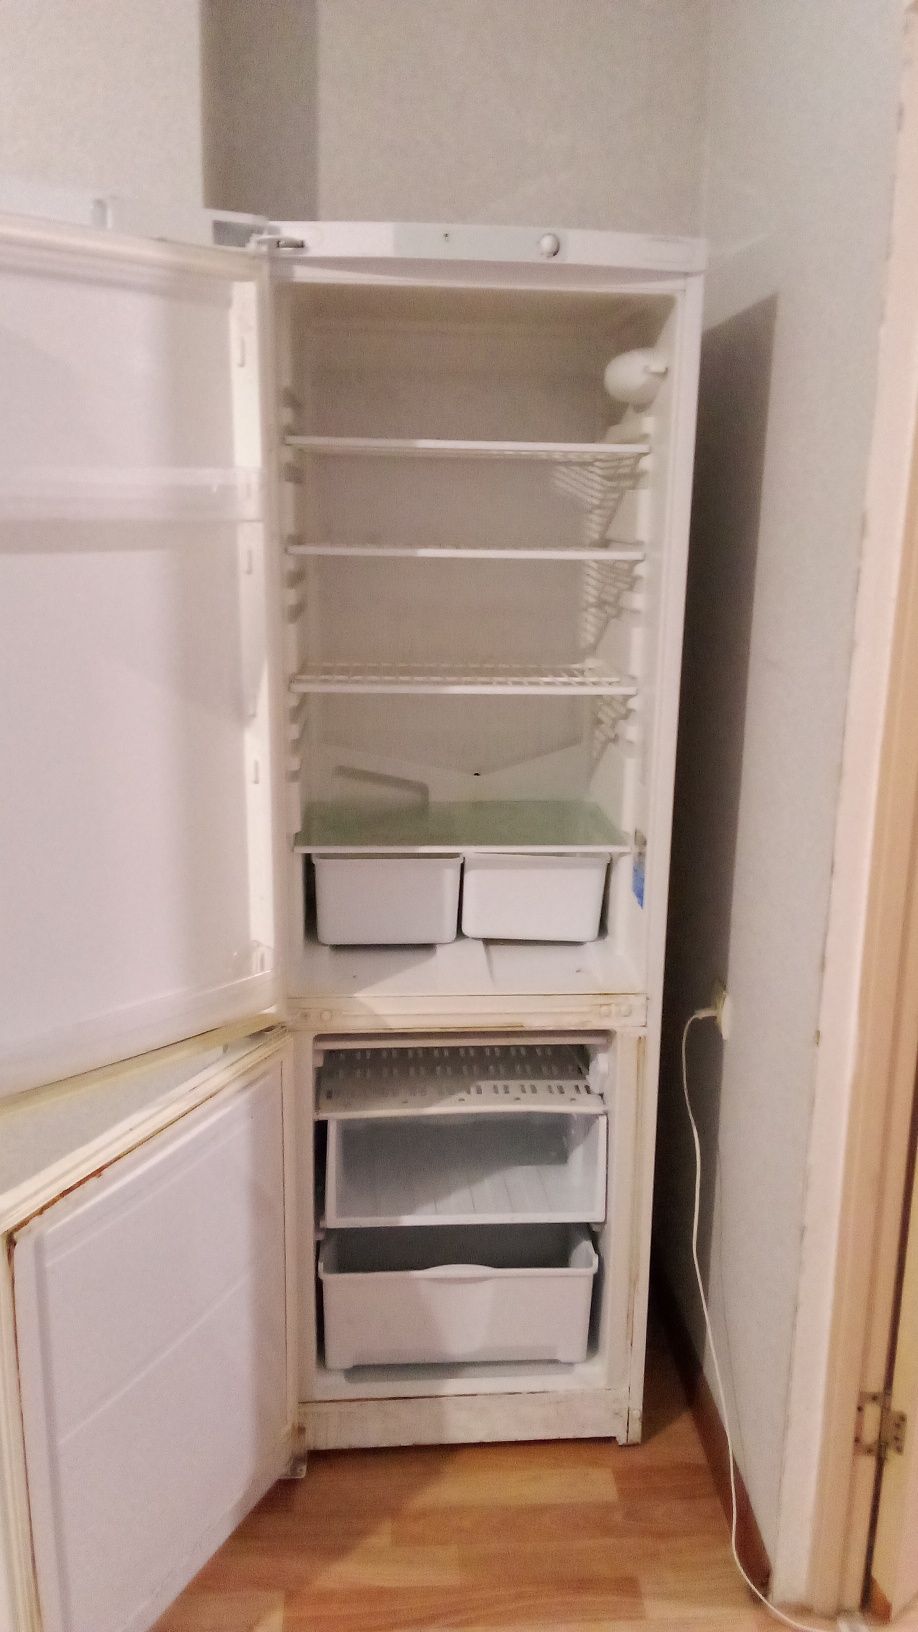 Продам Холодильник